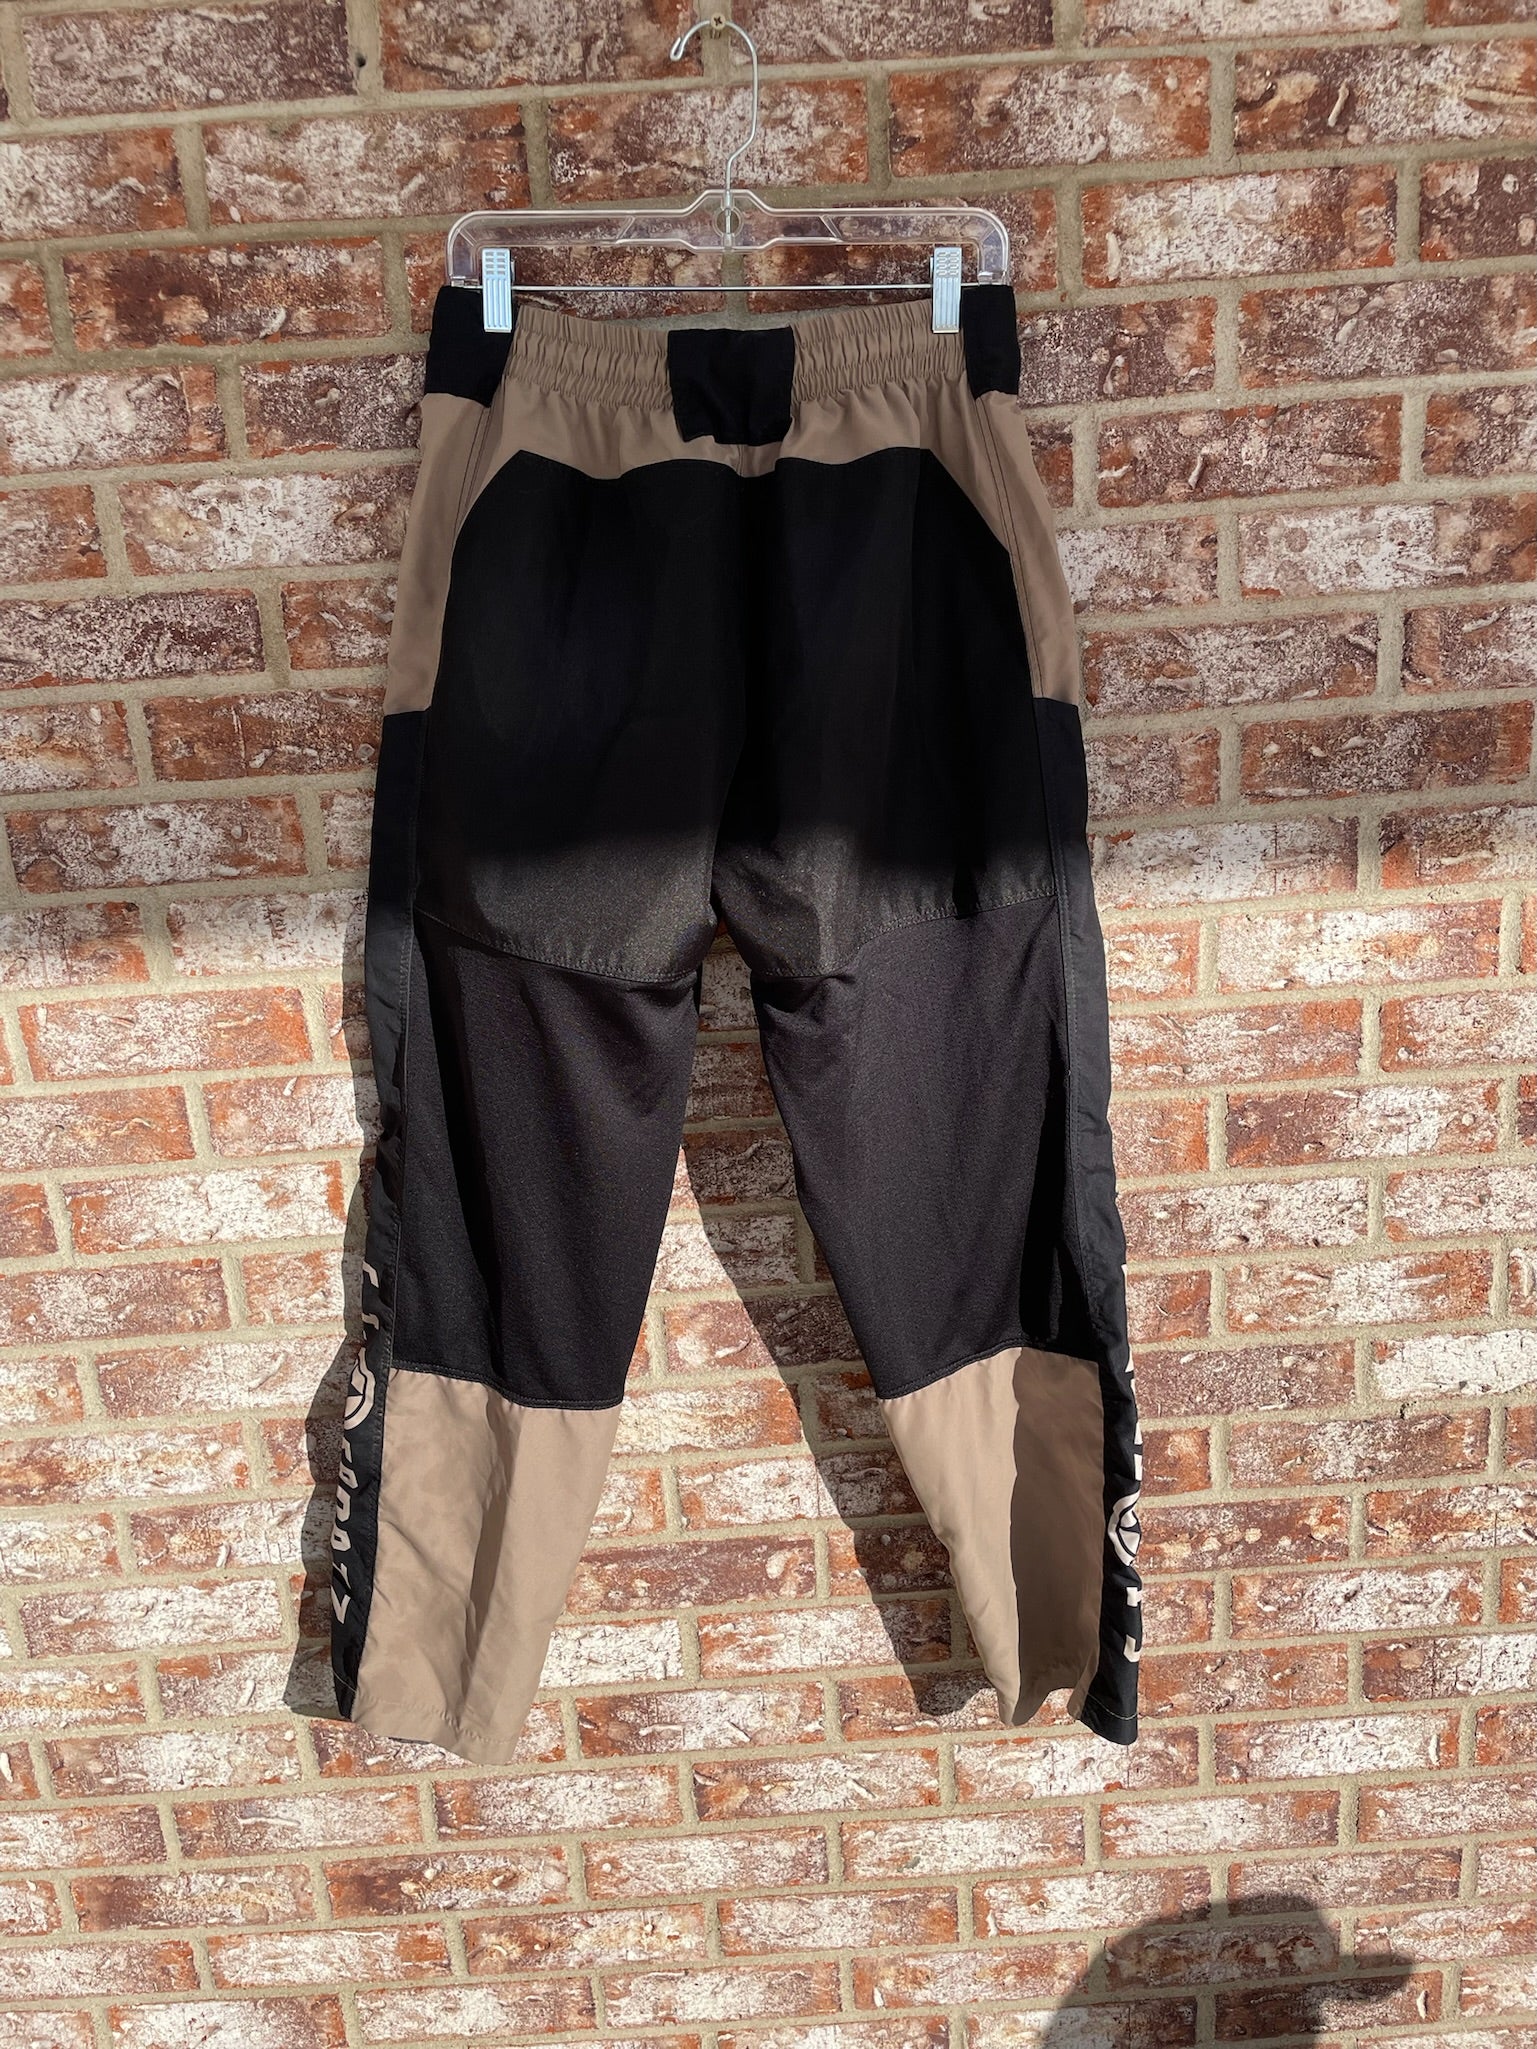 Used GI Sportz Grind Pants - Tan/Black - Medium